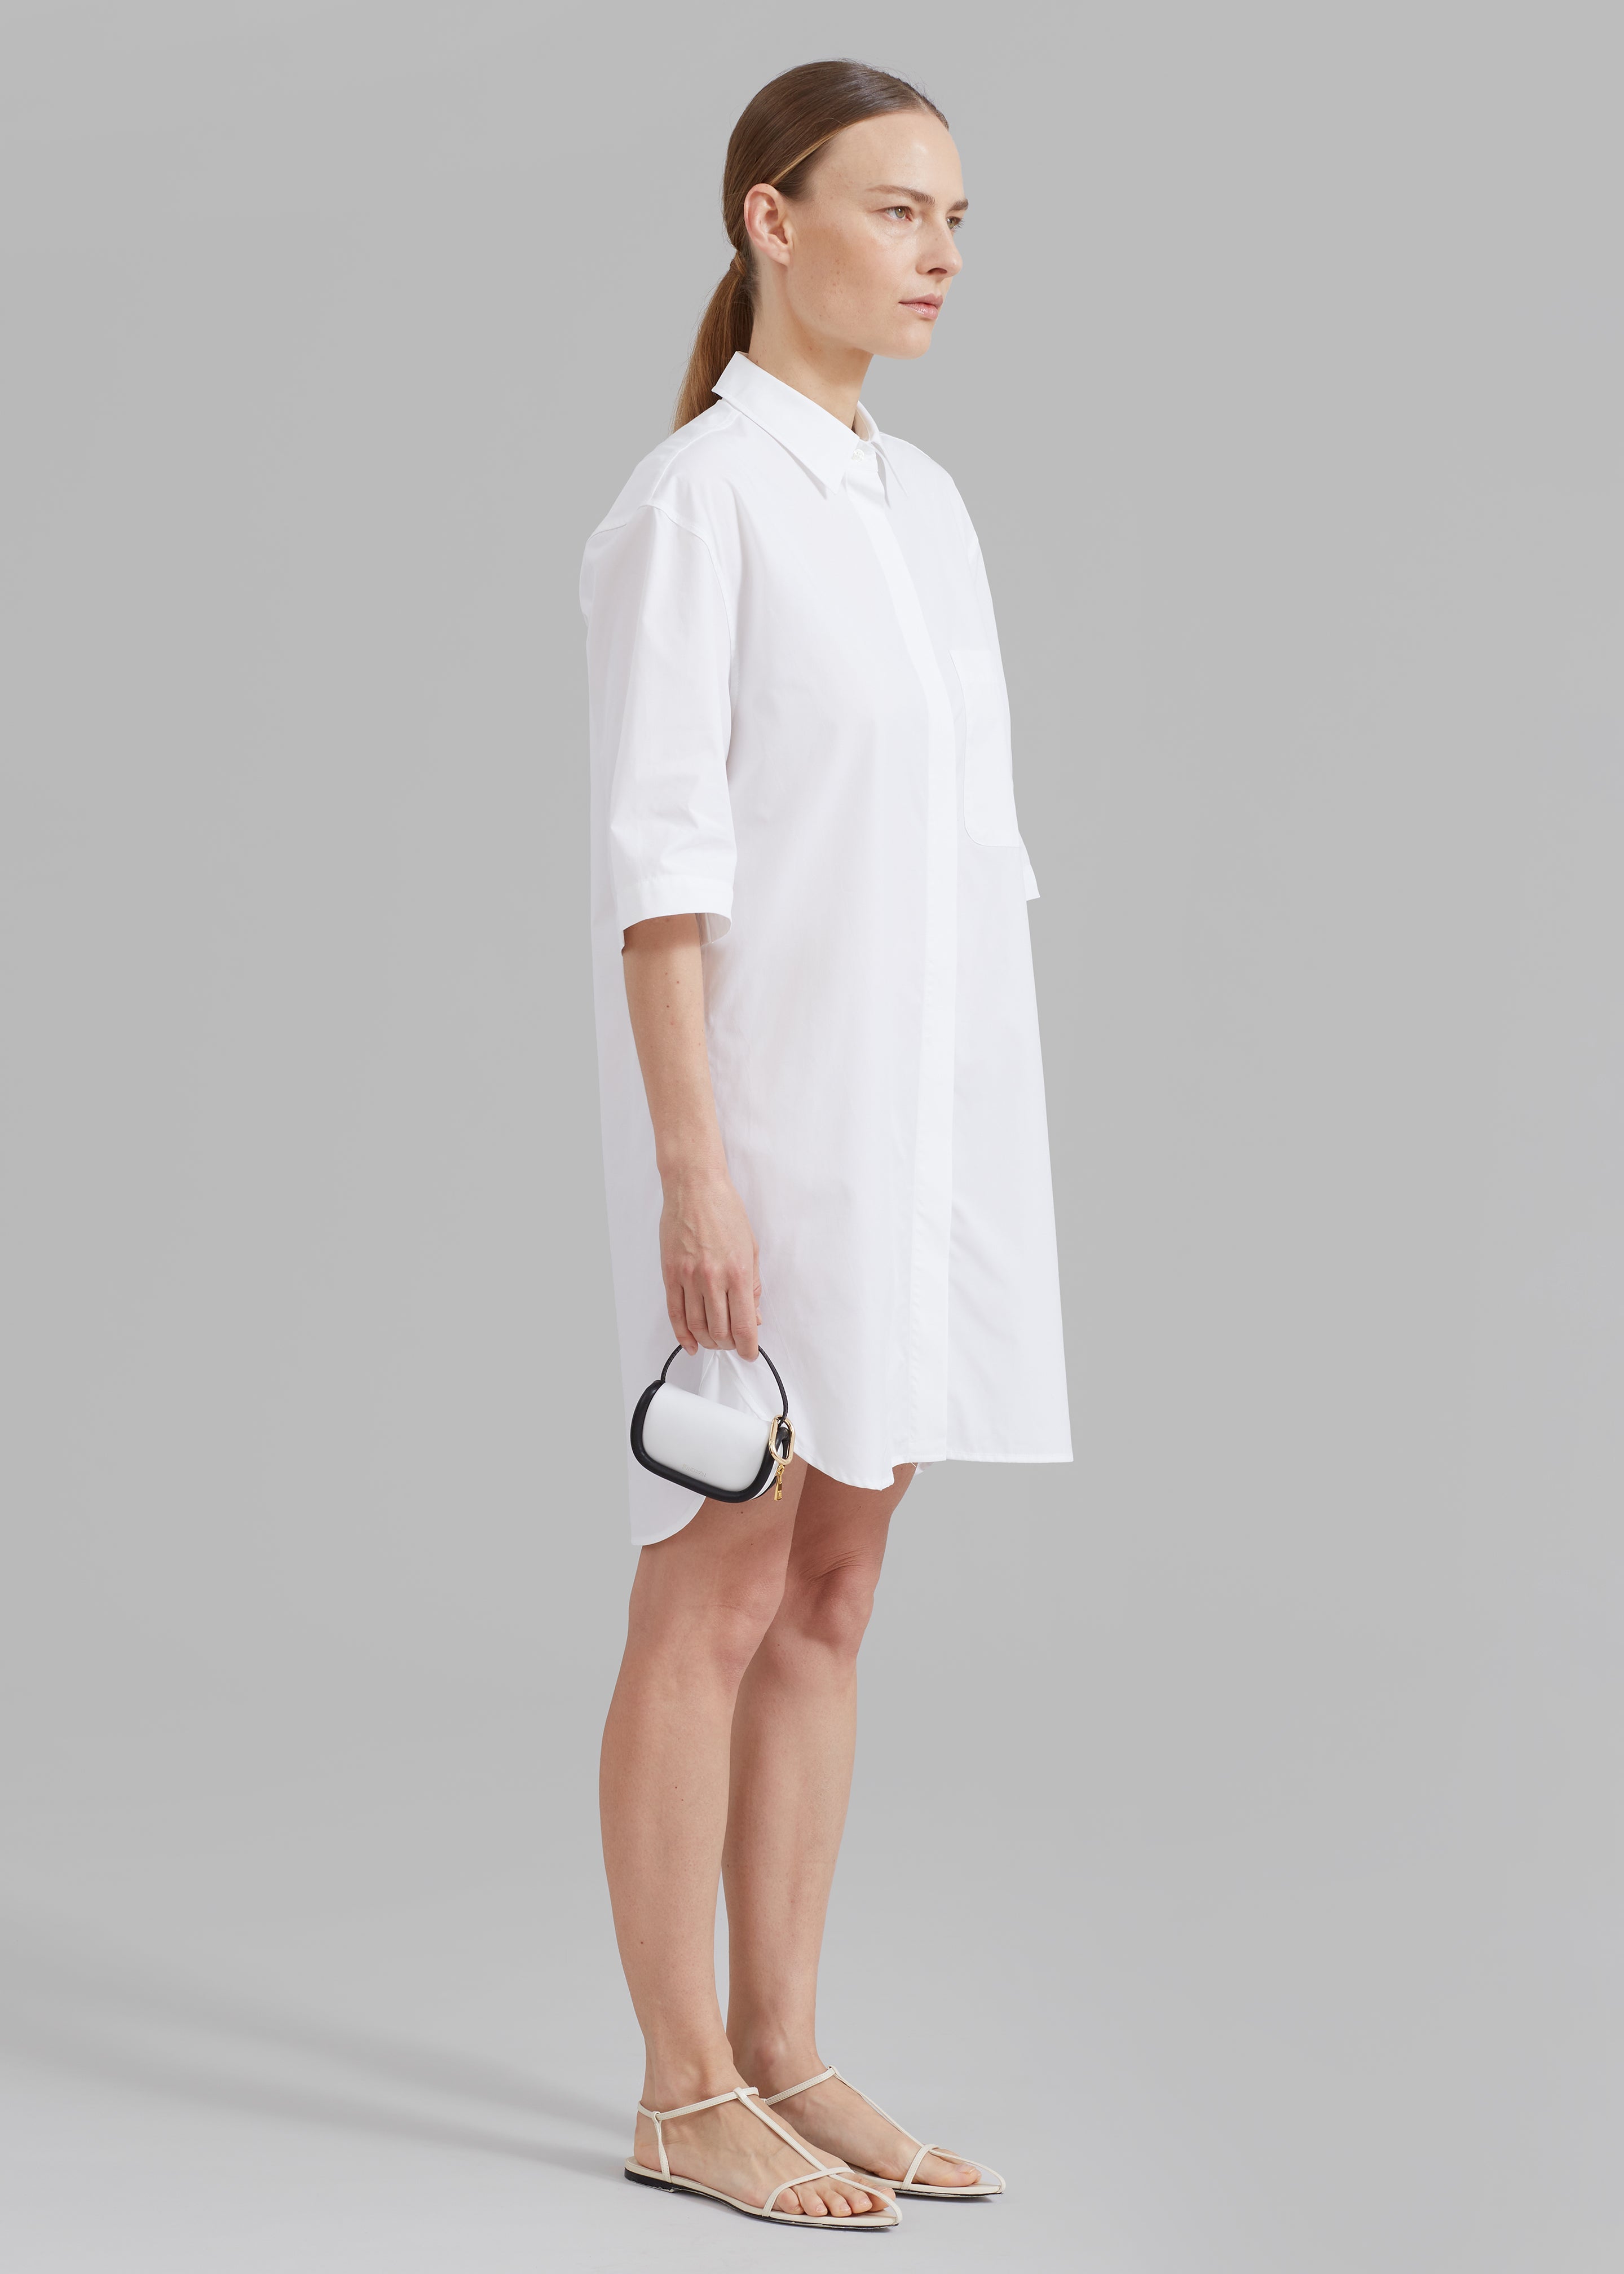 Loulou Studio Evora Shirt Dress - White - 2